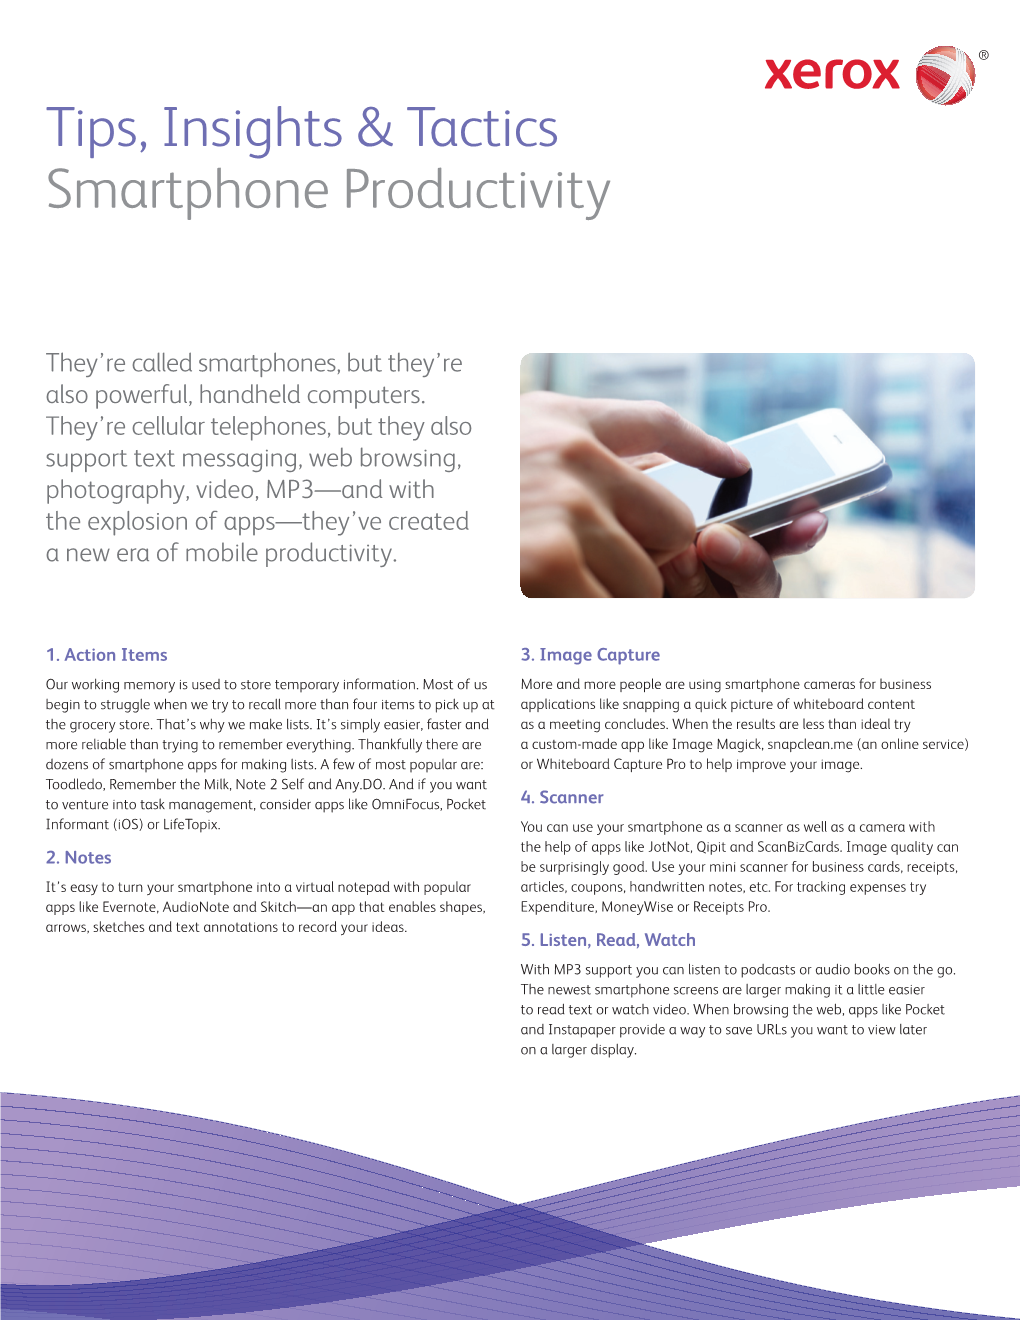 Tips, Insights & Tactics Smartphone Productivity